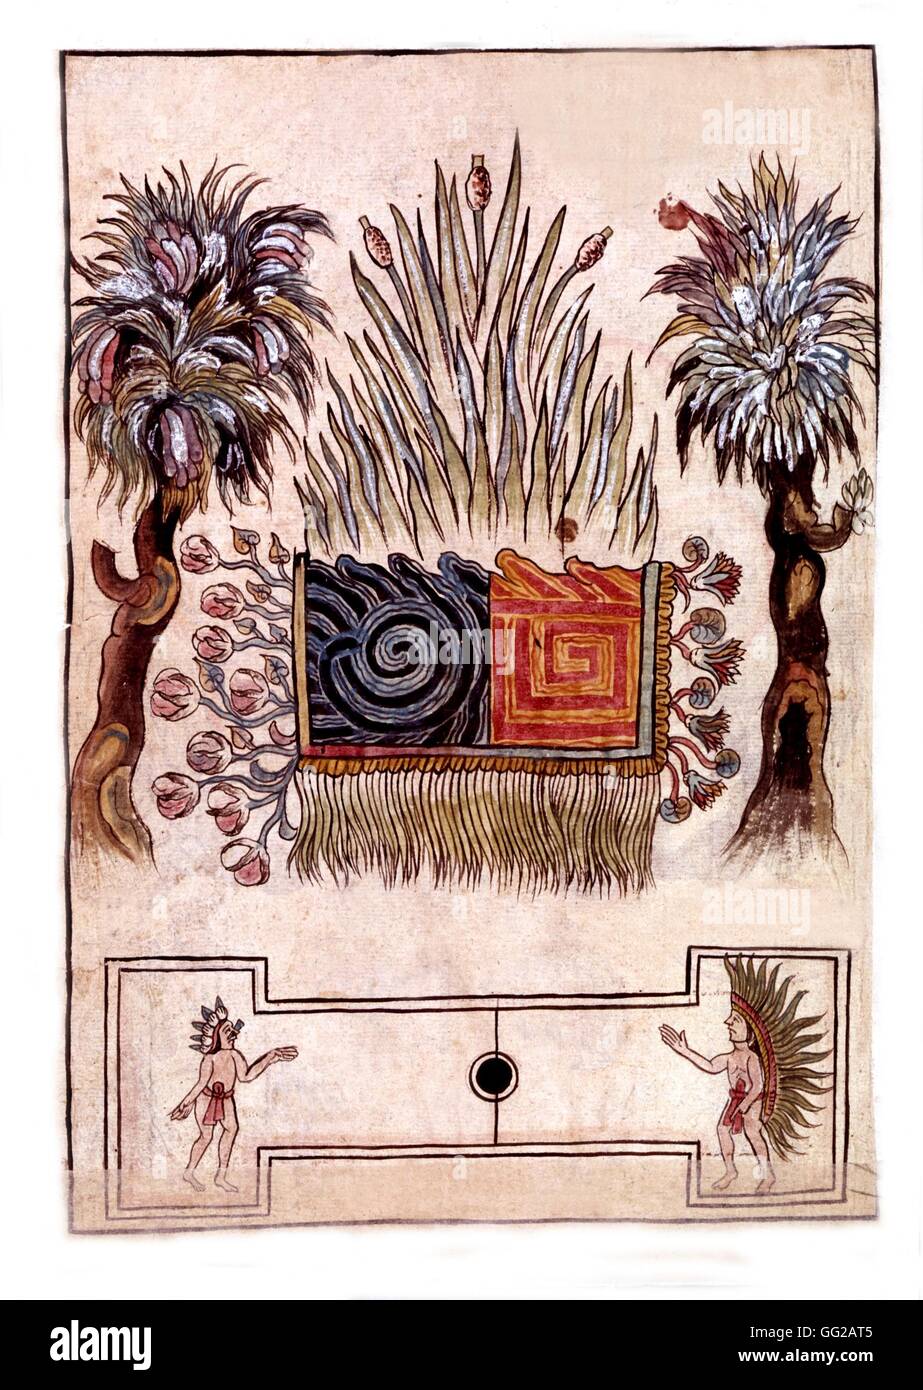 Symbole de la ville de Tulla. Ci-dessous, un tlachtli, une sorte de jeu de paume (jeu de paume) 16e siècle au Mexique Banque D'Images